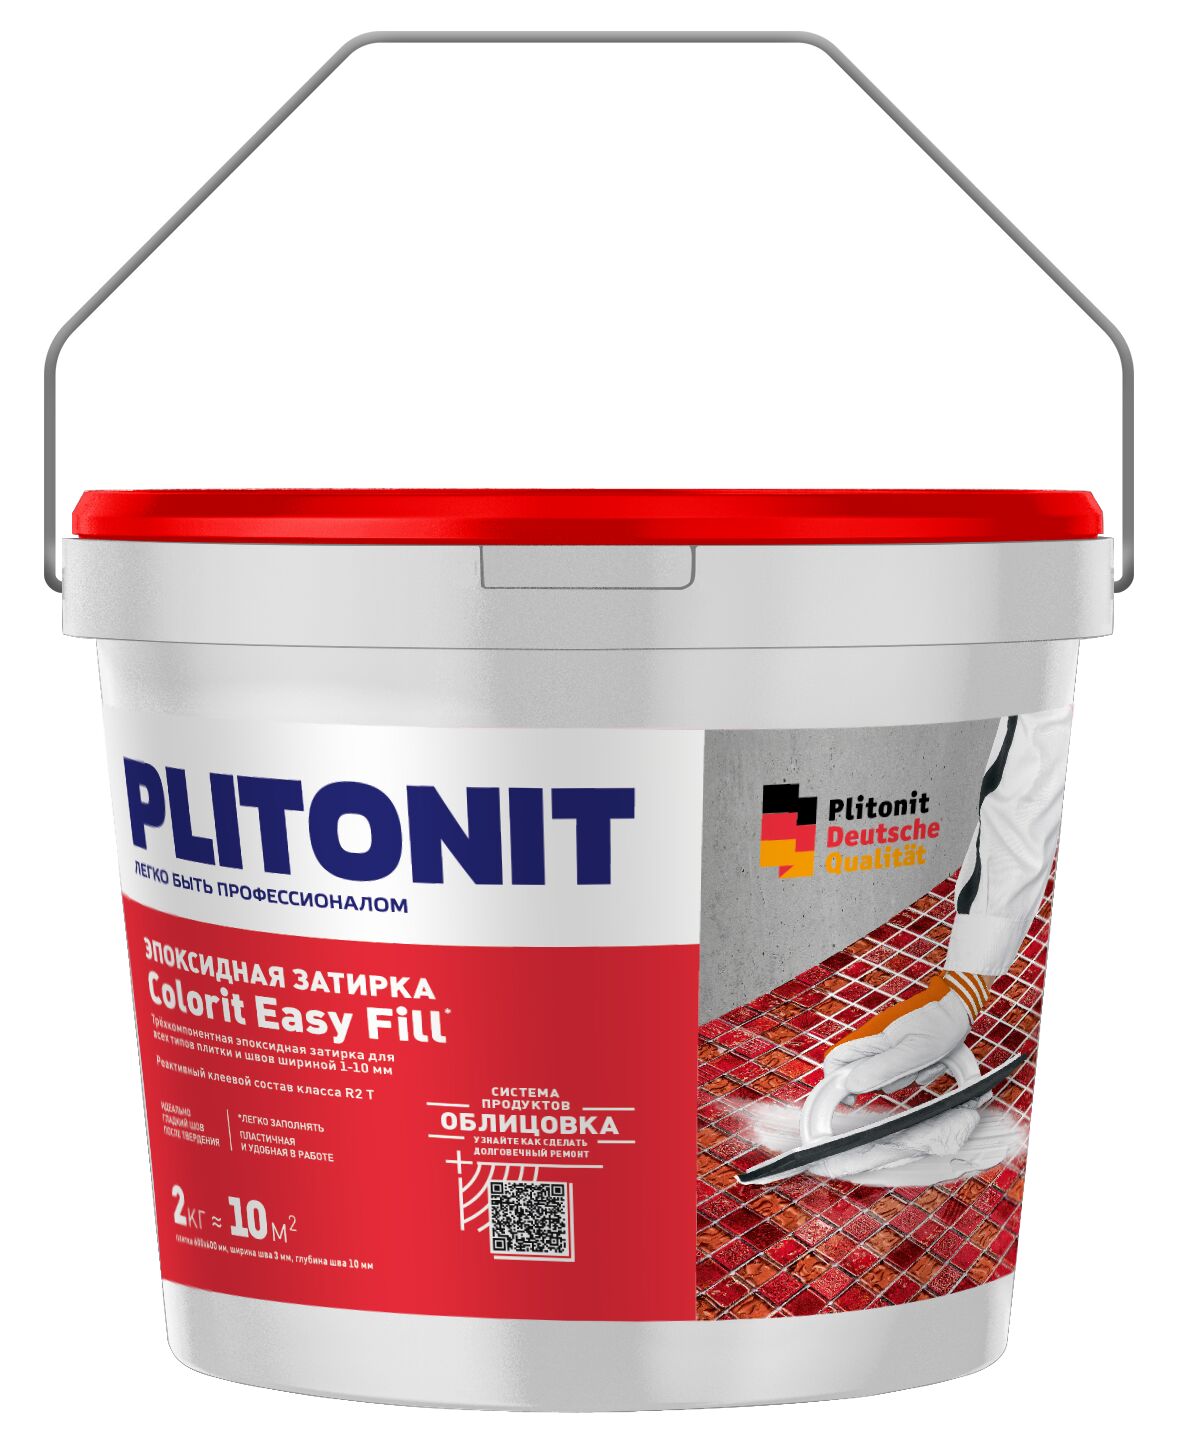 PLITONIT Colorit EasyFill серебристо-серый - 2 эпоксидная затирка для межплиточных швов и реактивный клей для плитки 